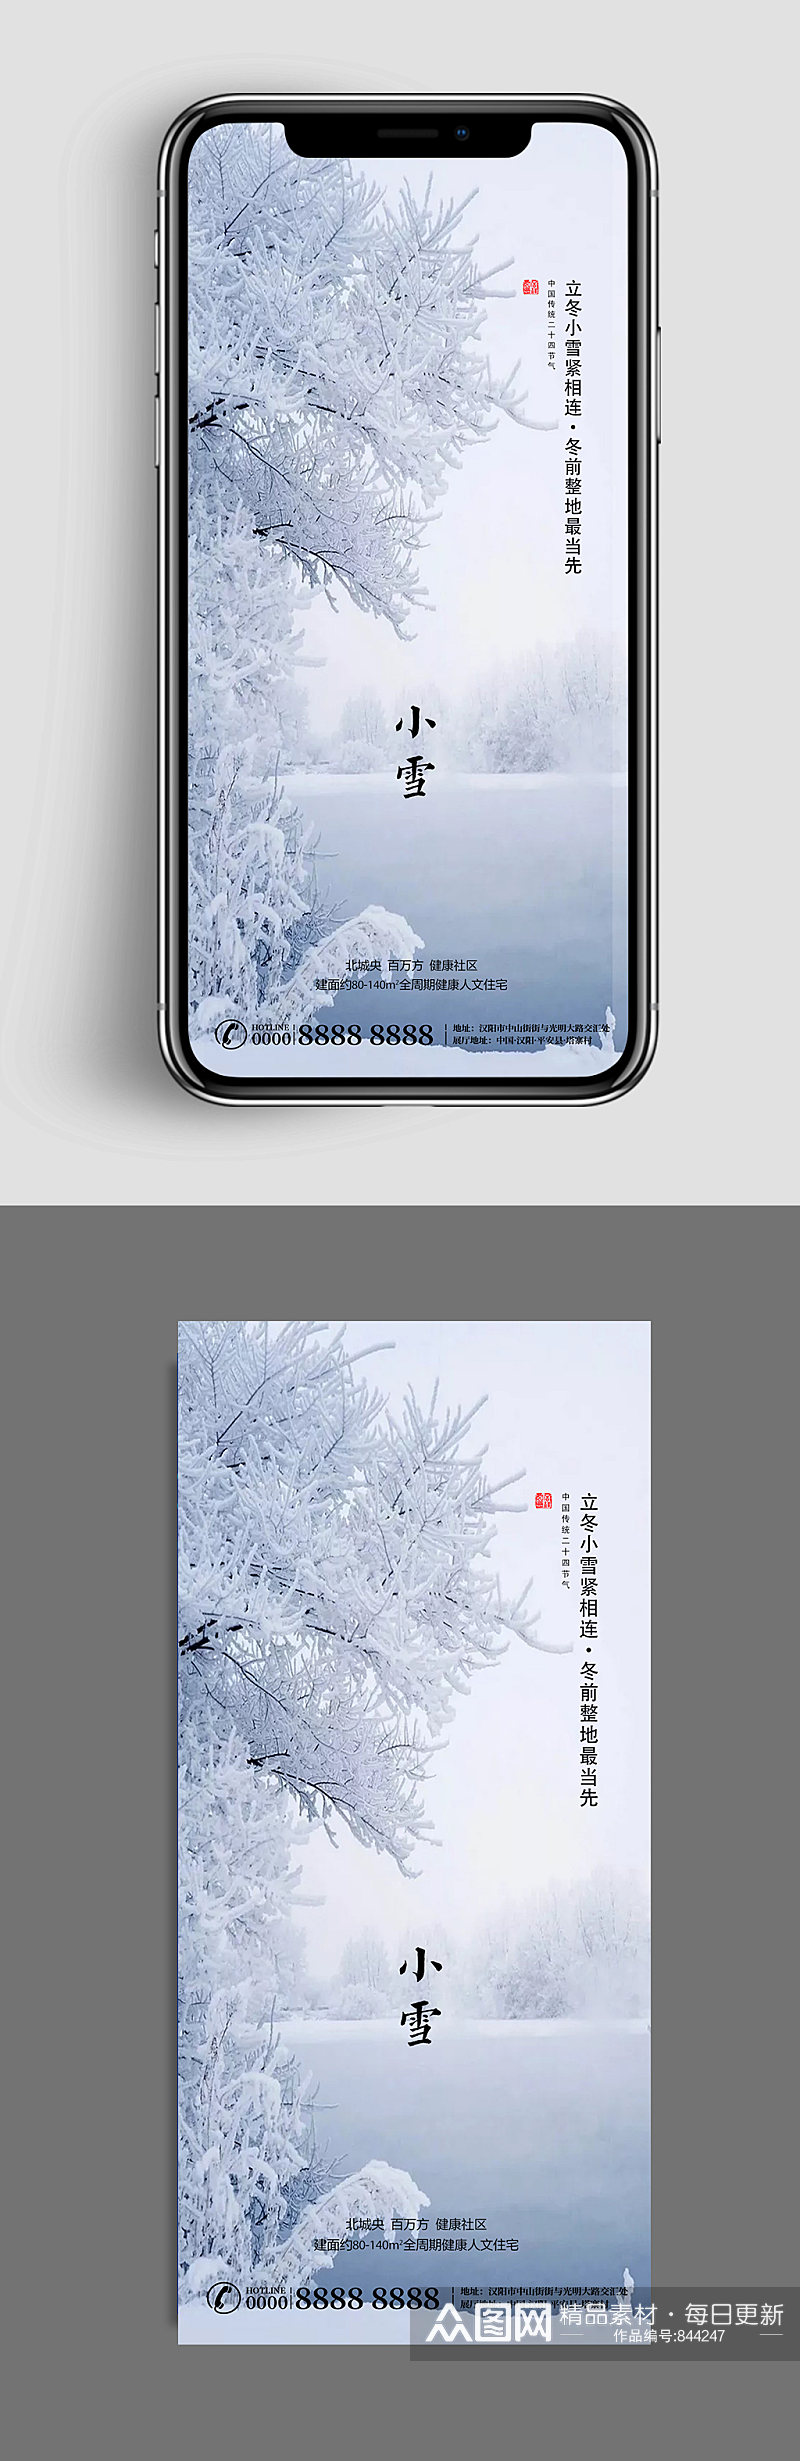 高端大气小雪雪景手机海报素材